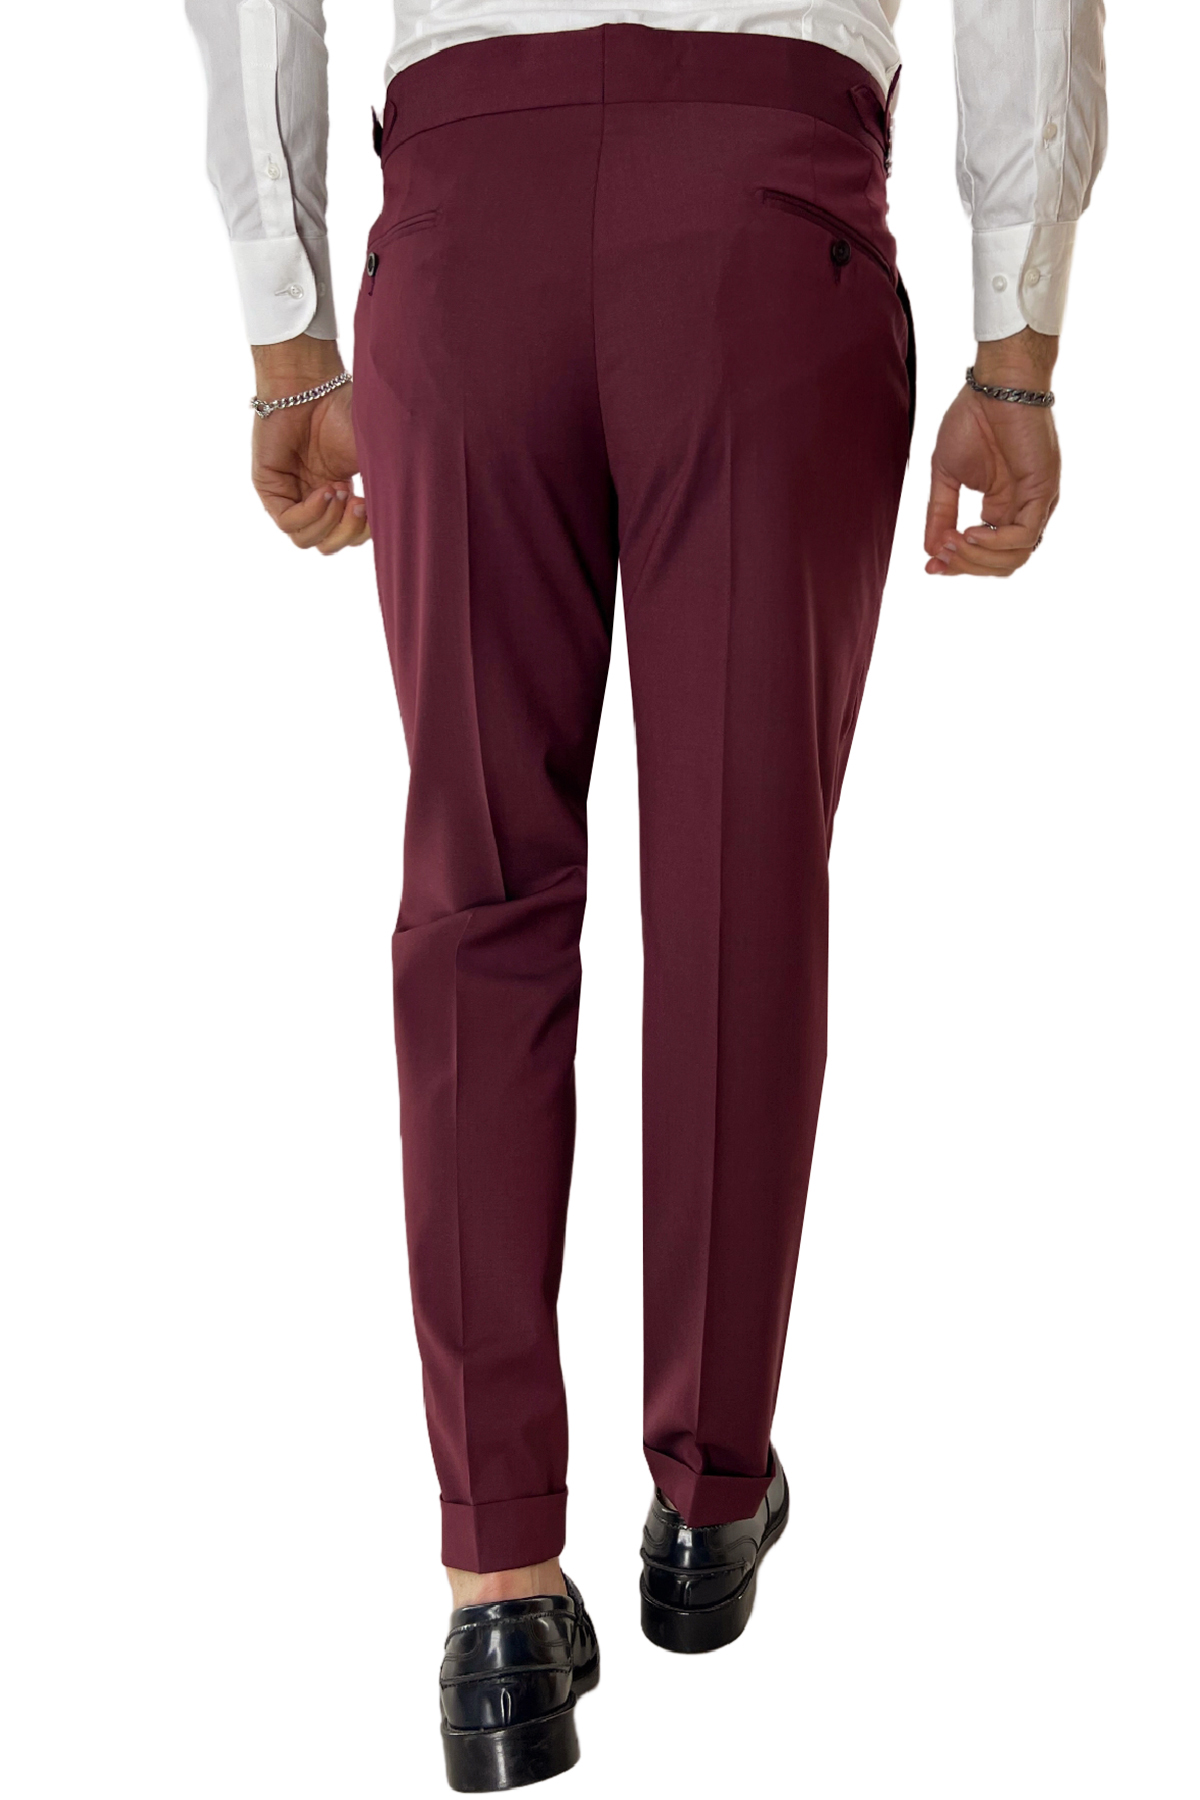 Pantalone uomo bordeaux fresco lana Vitale Barberis vita alta con pinces fibbie laterali e risvolto 4cm